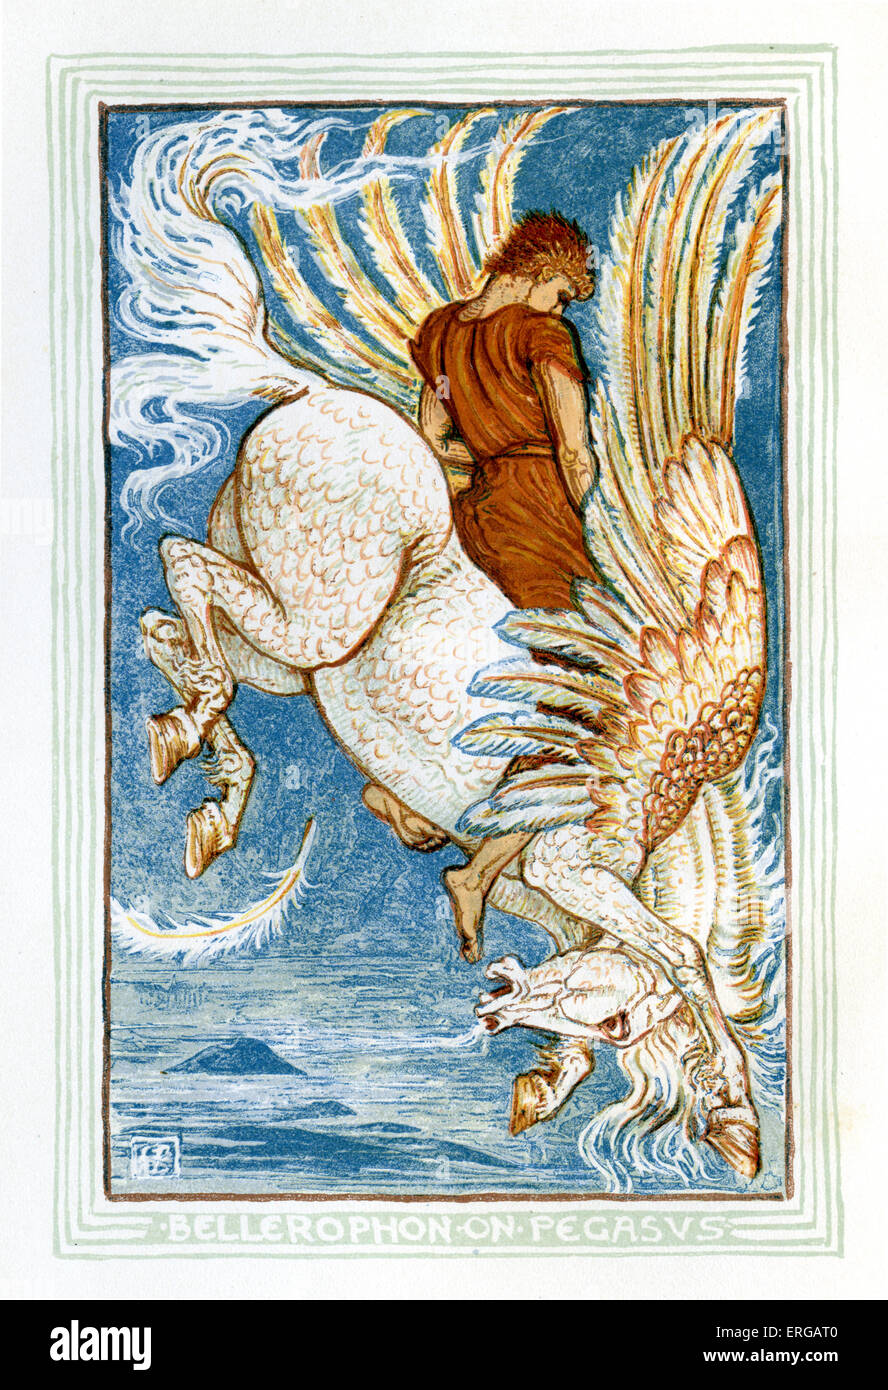 Equitazione Bellerophon Pegasus. Racconto di miti greci di Nathaniel Hawthorne (1804 - 1864). Illustrazioni di Walter Crane 1845 Foto Stock